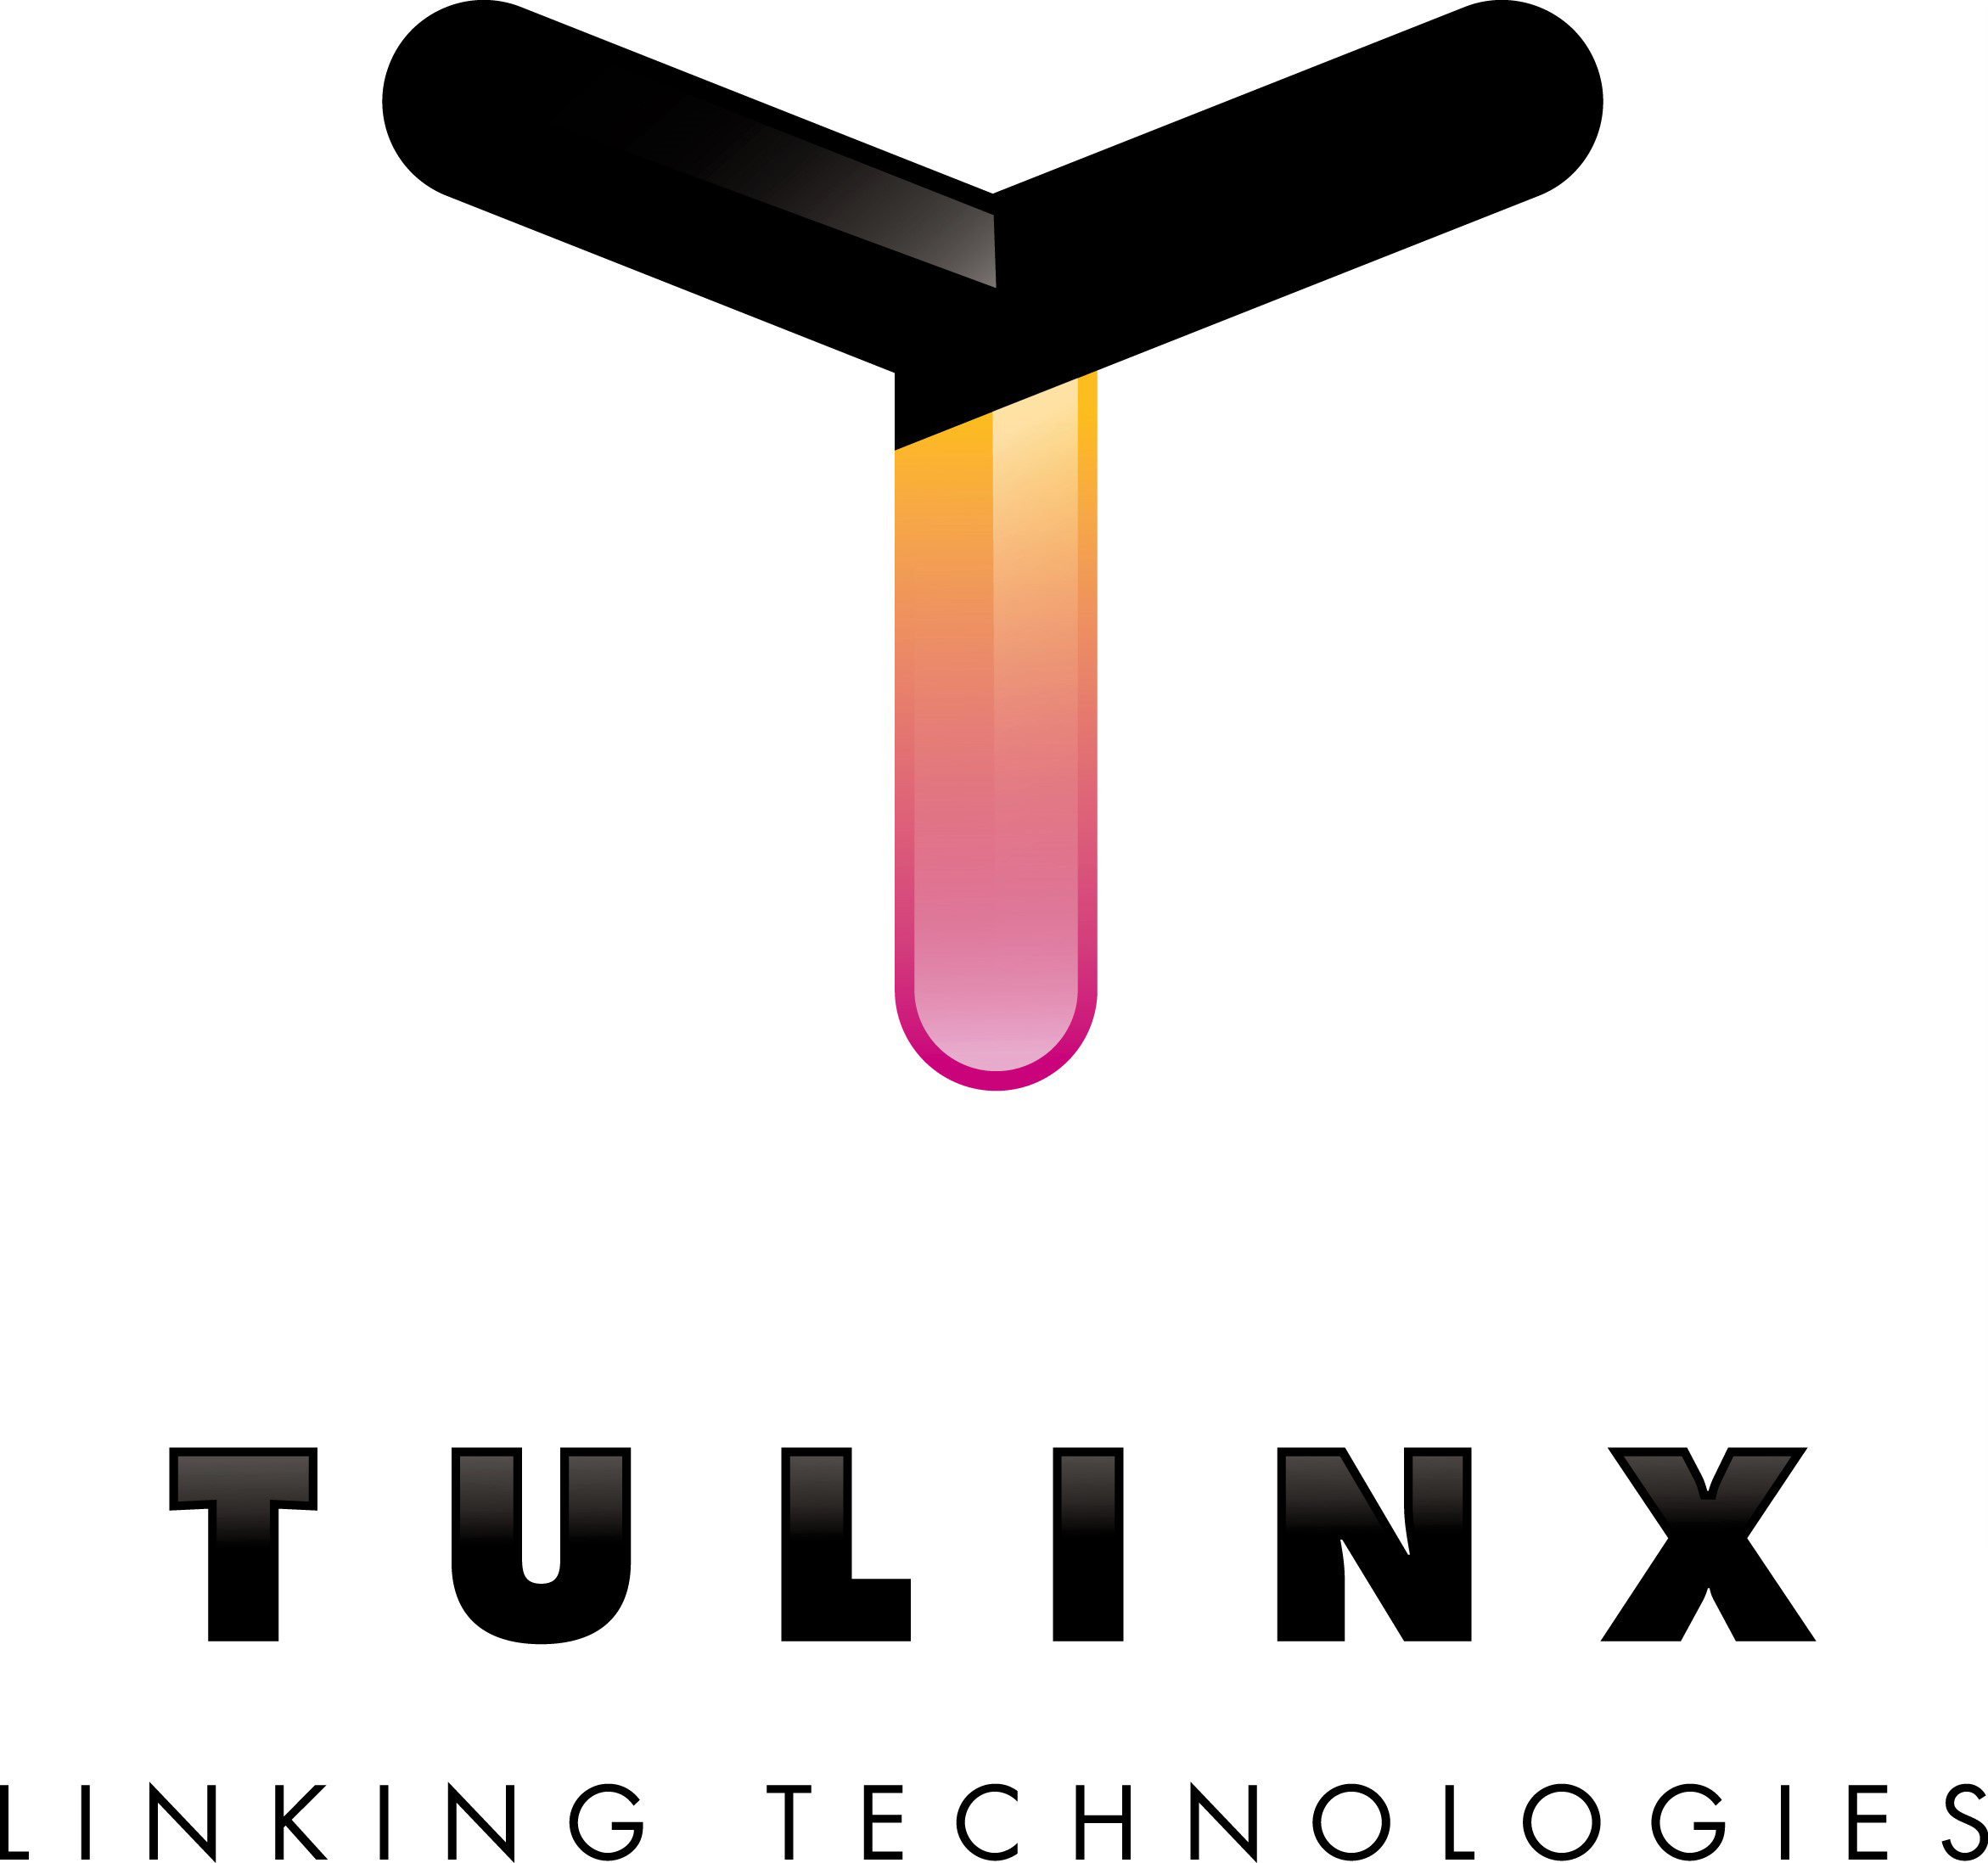 Tulinx logo